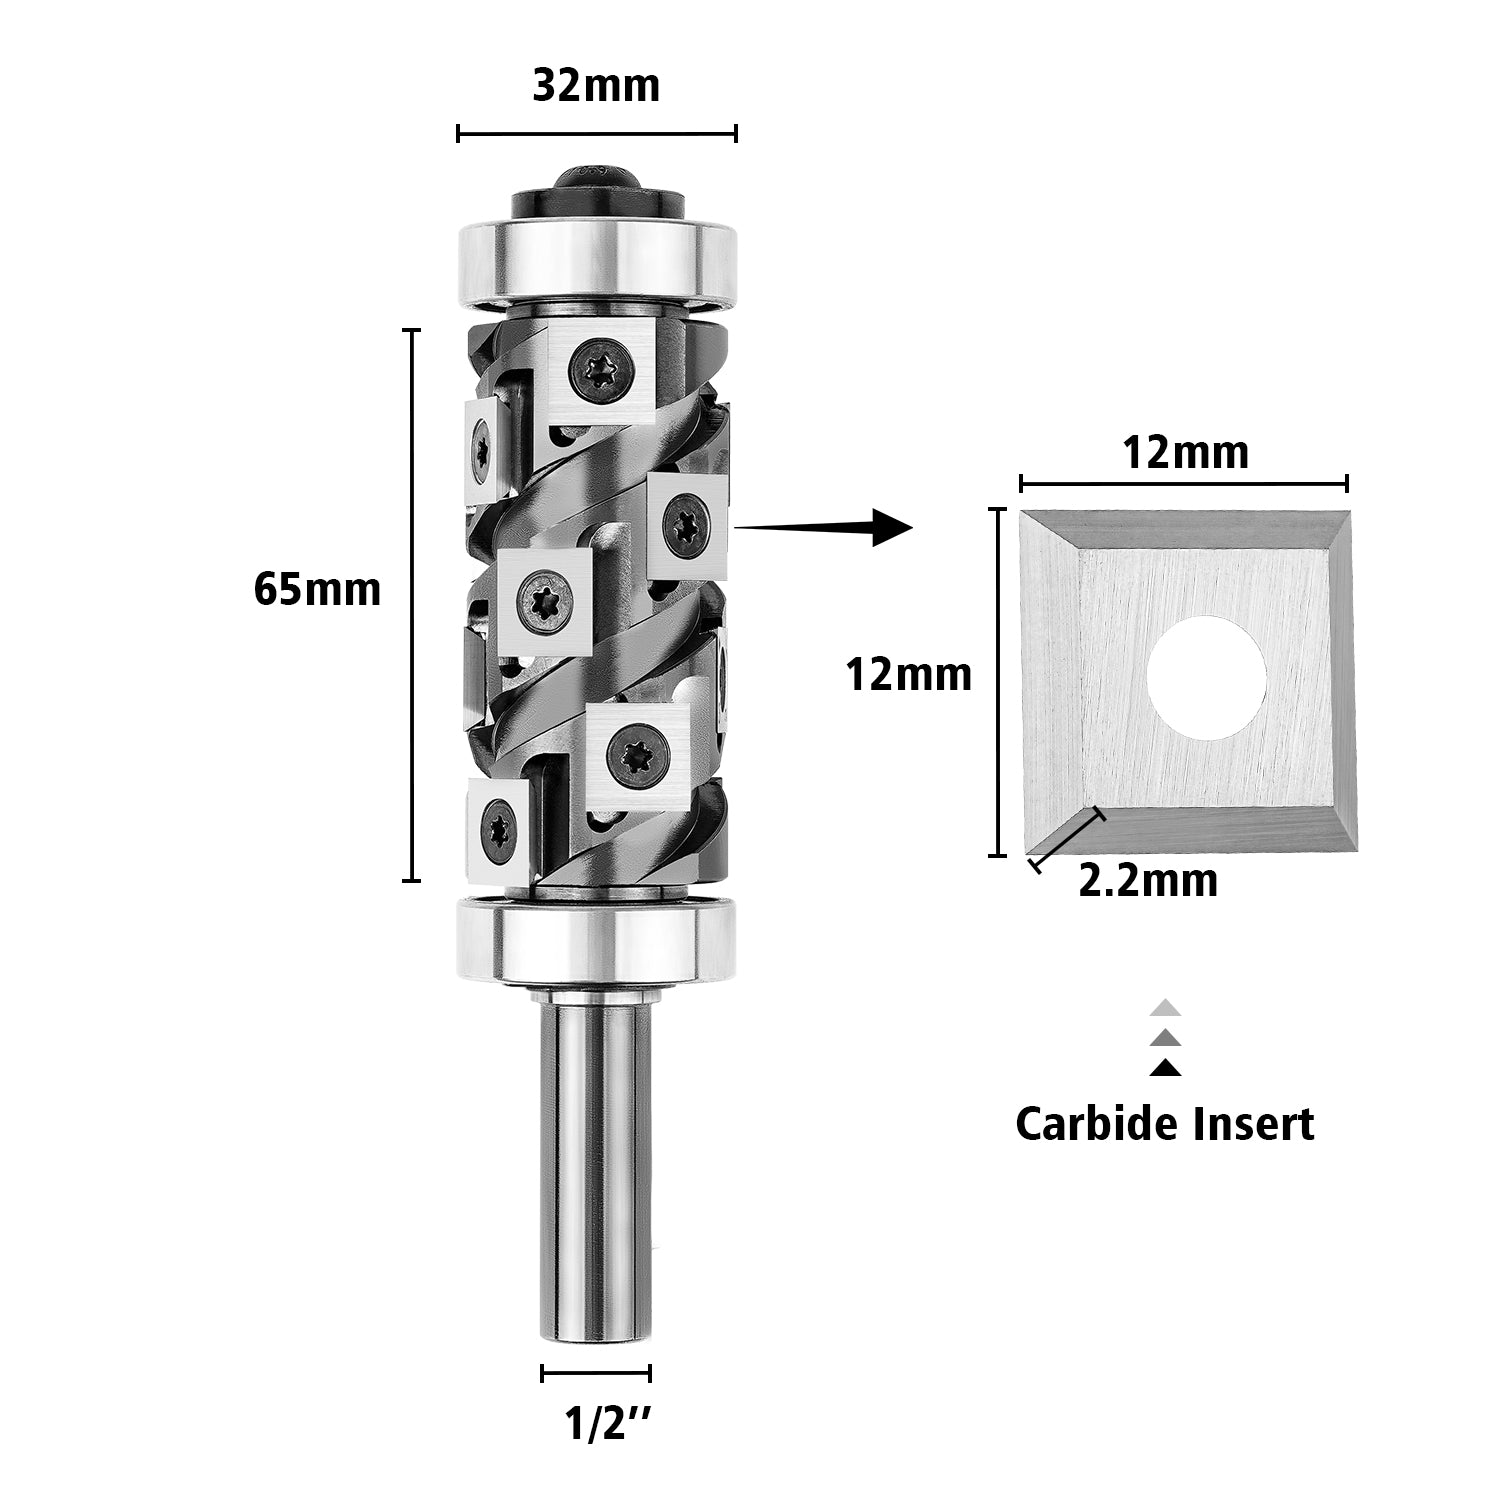 SpeTool ranger Series double bearings carbide insert flush trim bit